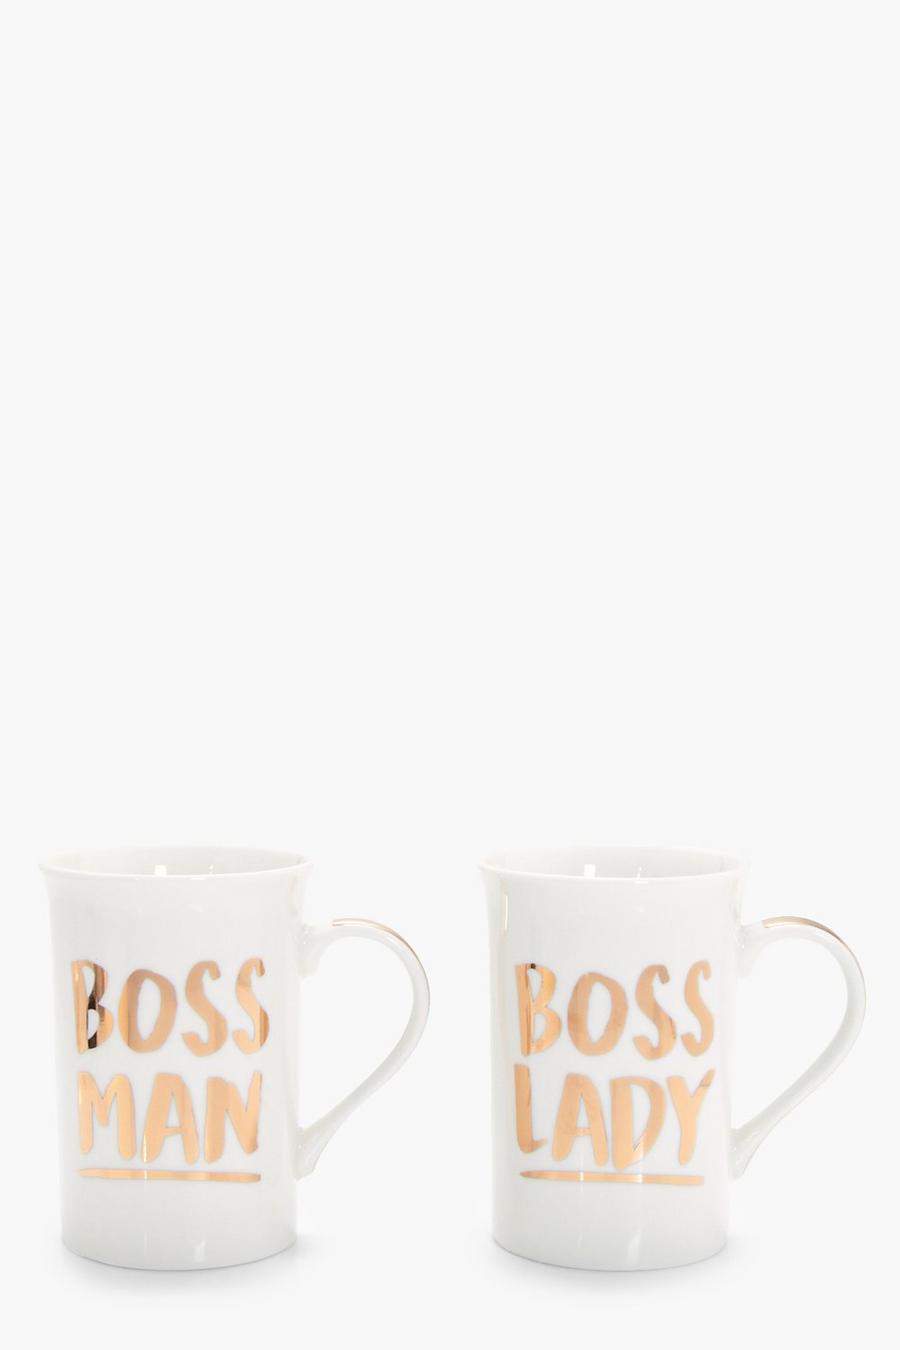 Boss Man And Boss Lady Mugs image number 1